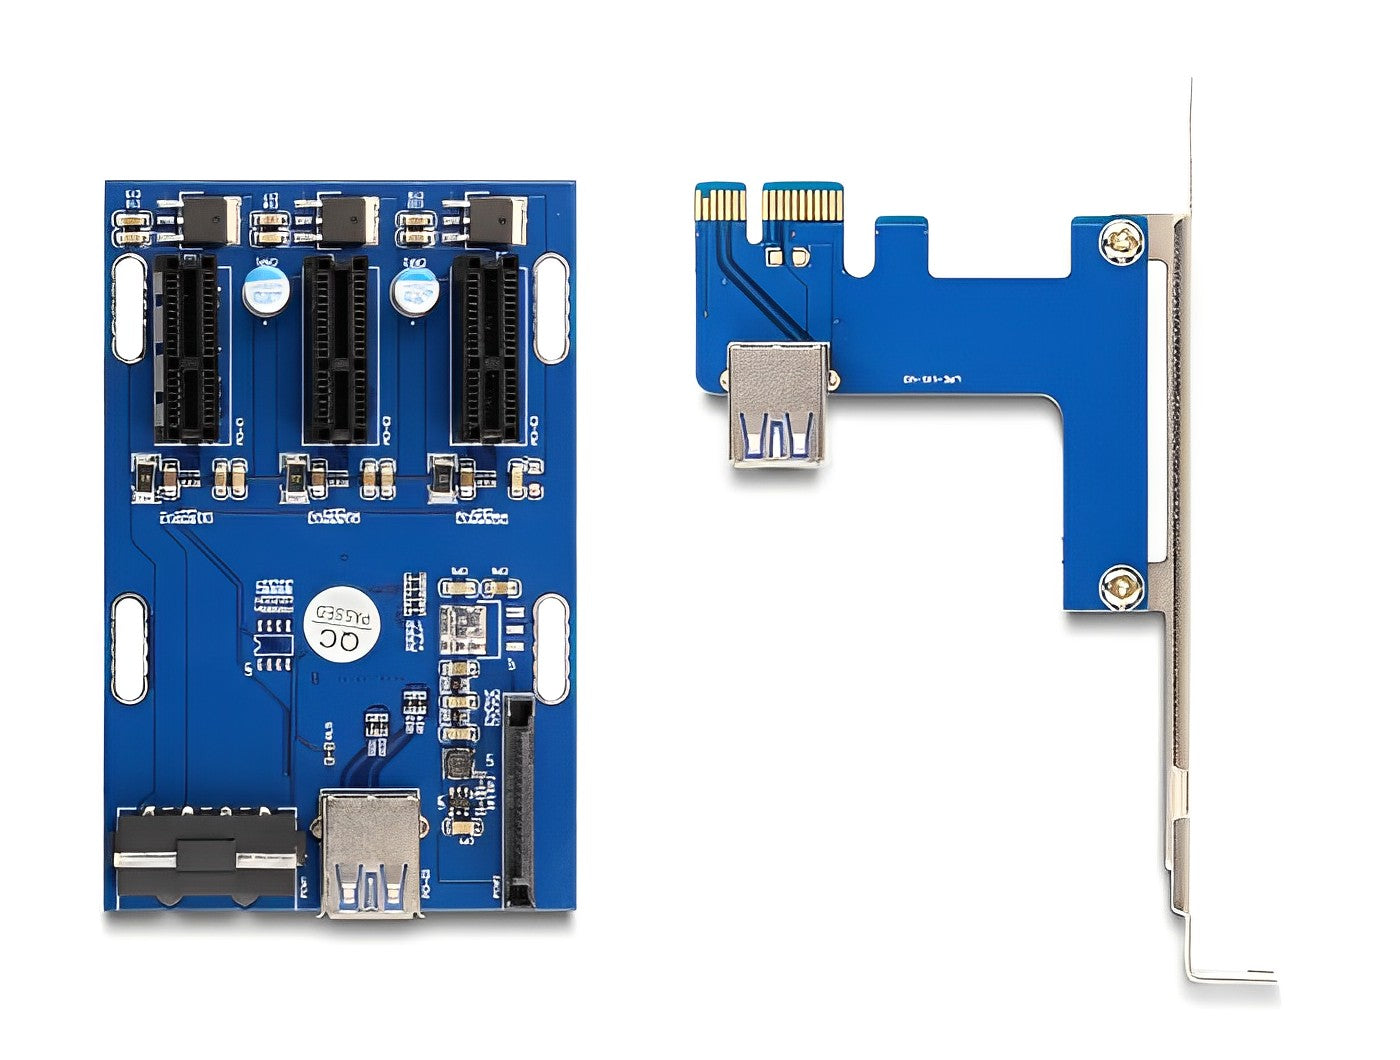 כרטיס הרחבה רייזר מסלוט PCIe x1 ל- 3 סלוטים PCIe x1 על כבל USB אורך 50 ס"מ - delock.israel